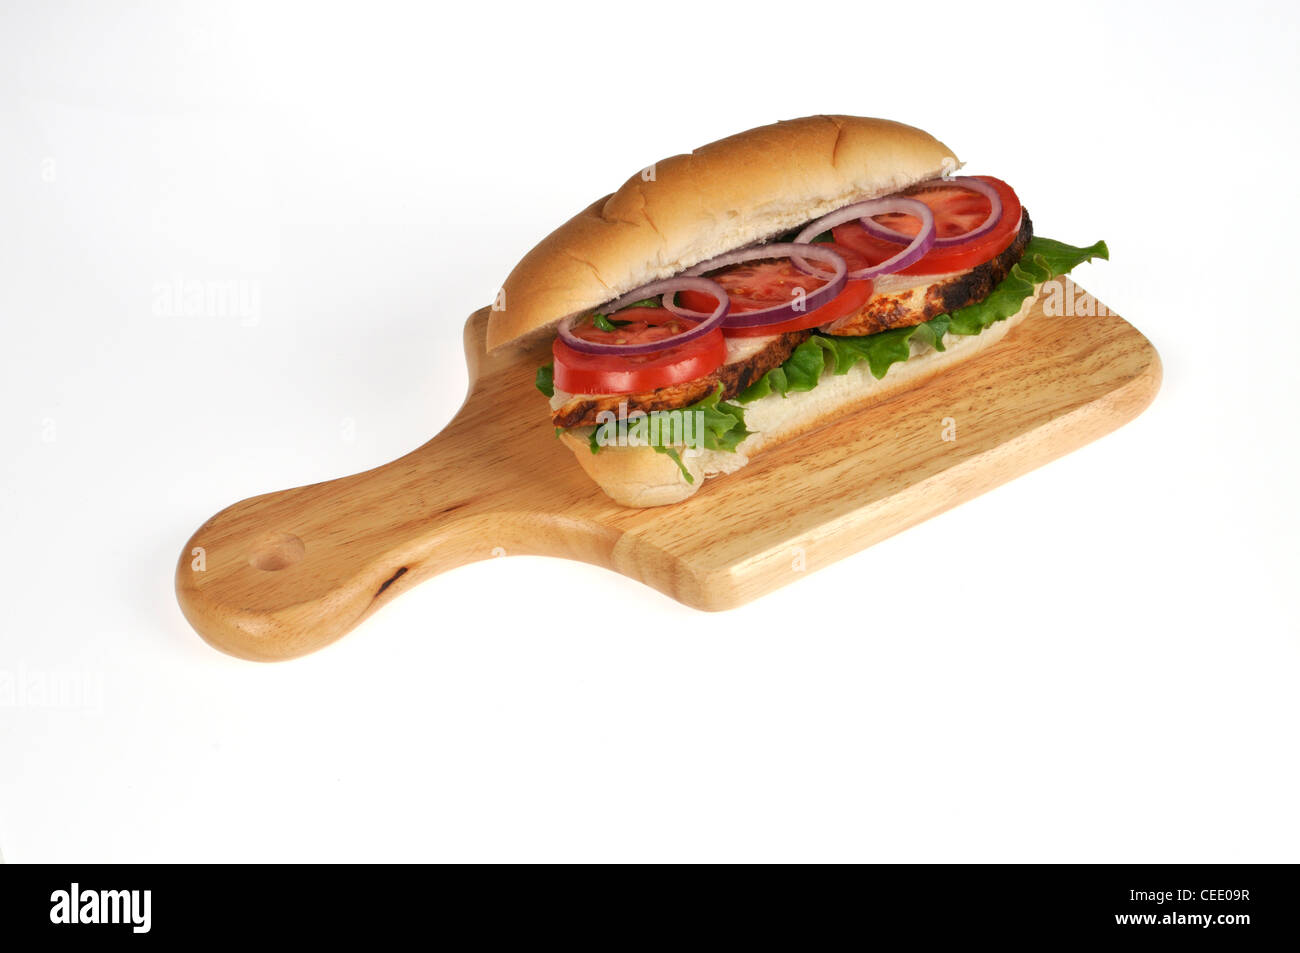 Asador de pollo sándwich submarino con lechuga, tomate y cebolla ensalada de madera deli junta sobre fondo blanco. Foto de stock